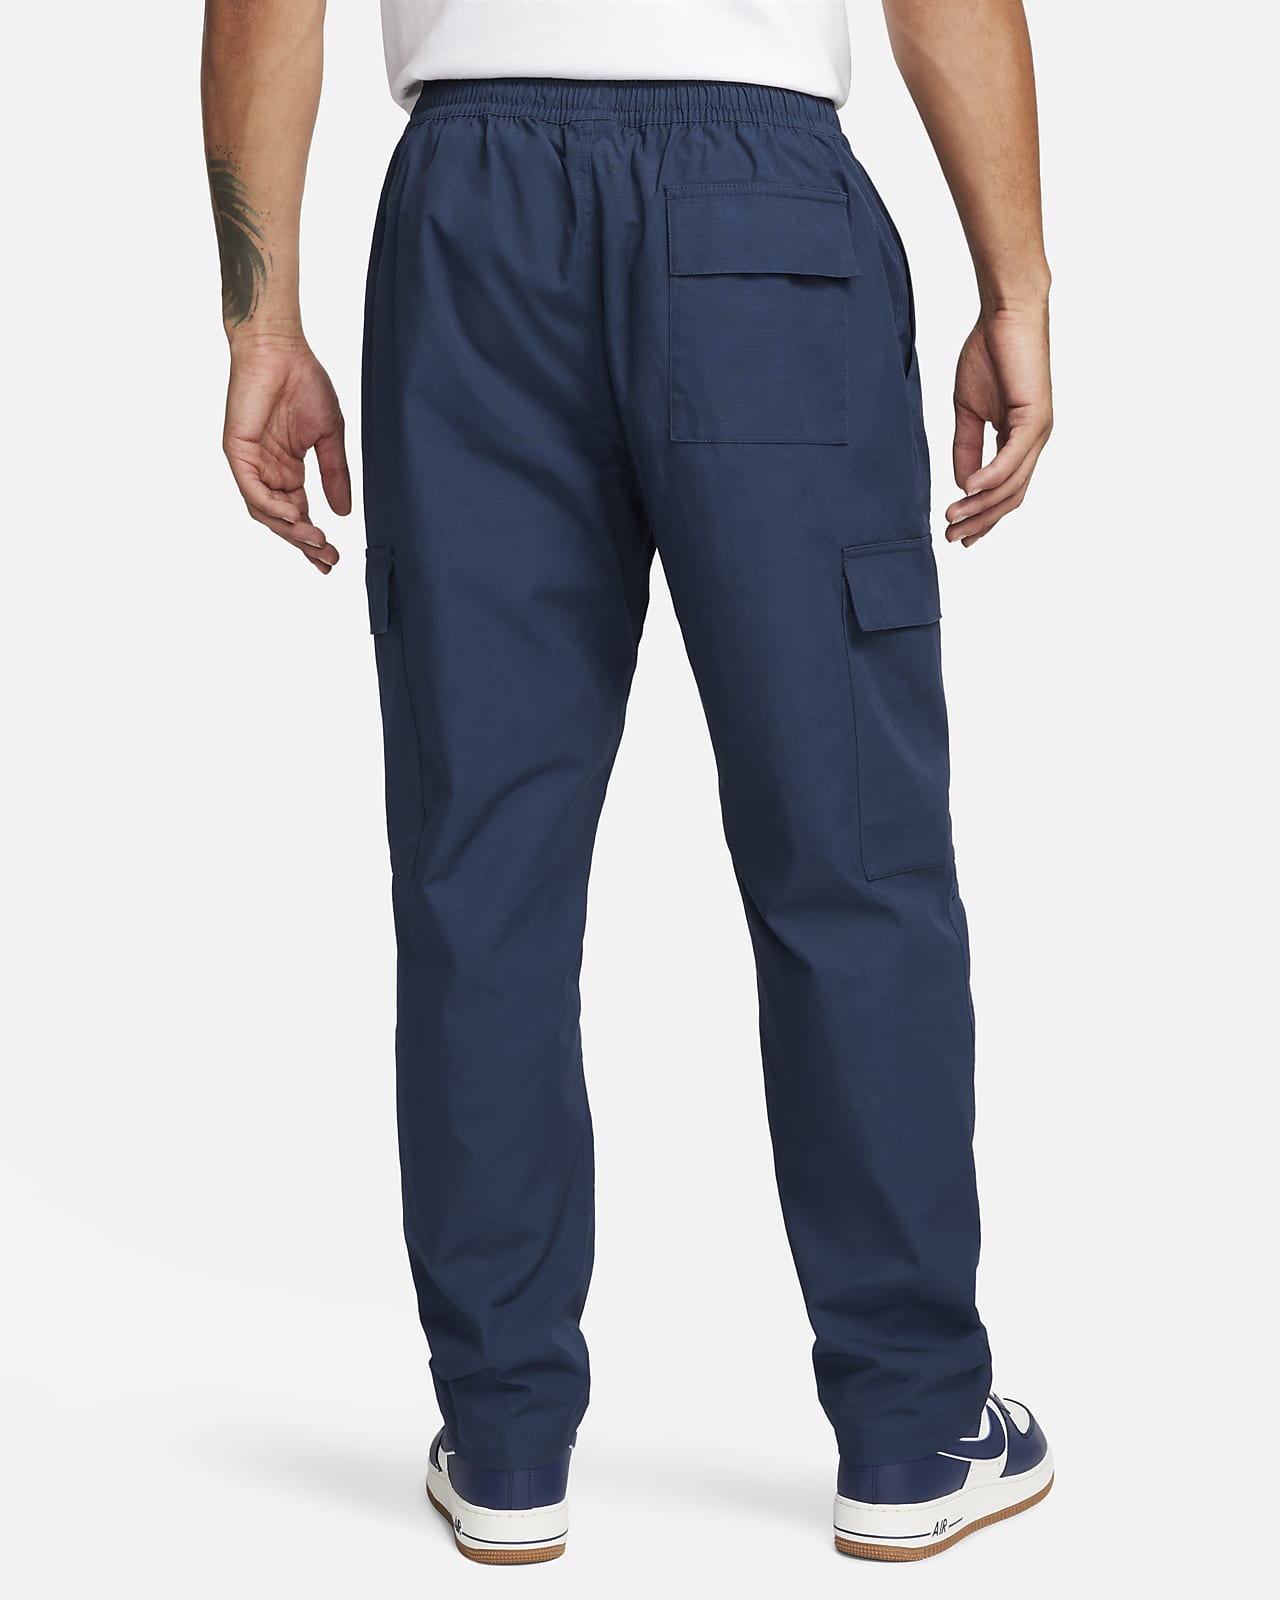 Woven Cargo Utility Pocket Pants  Pocket pants, Pants, Pants for